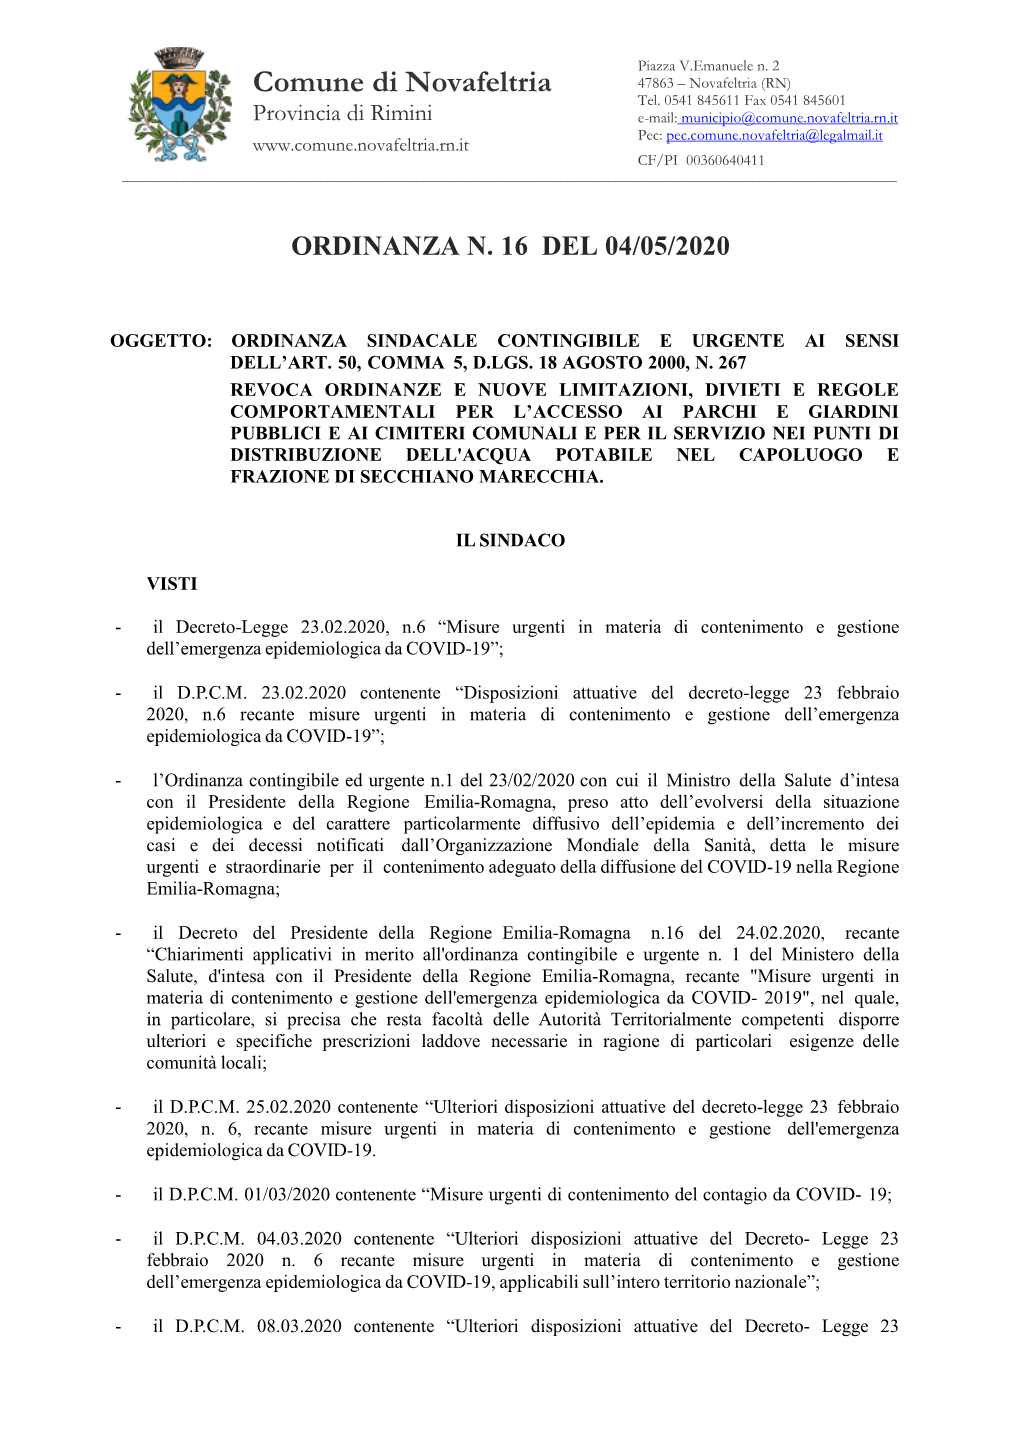 Scarica L'ordinanza N. 16 Del 04/05/2020